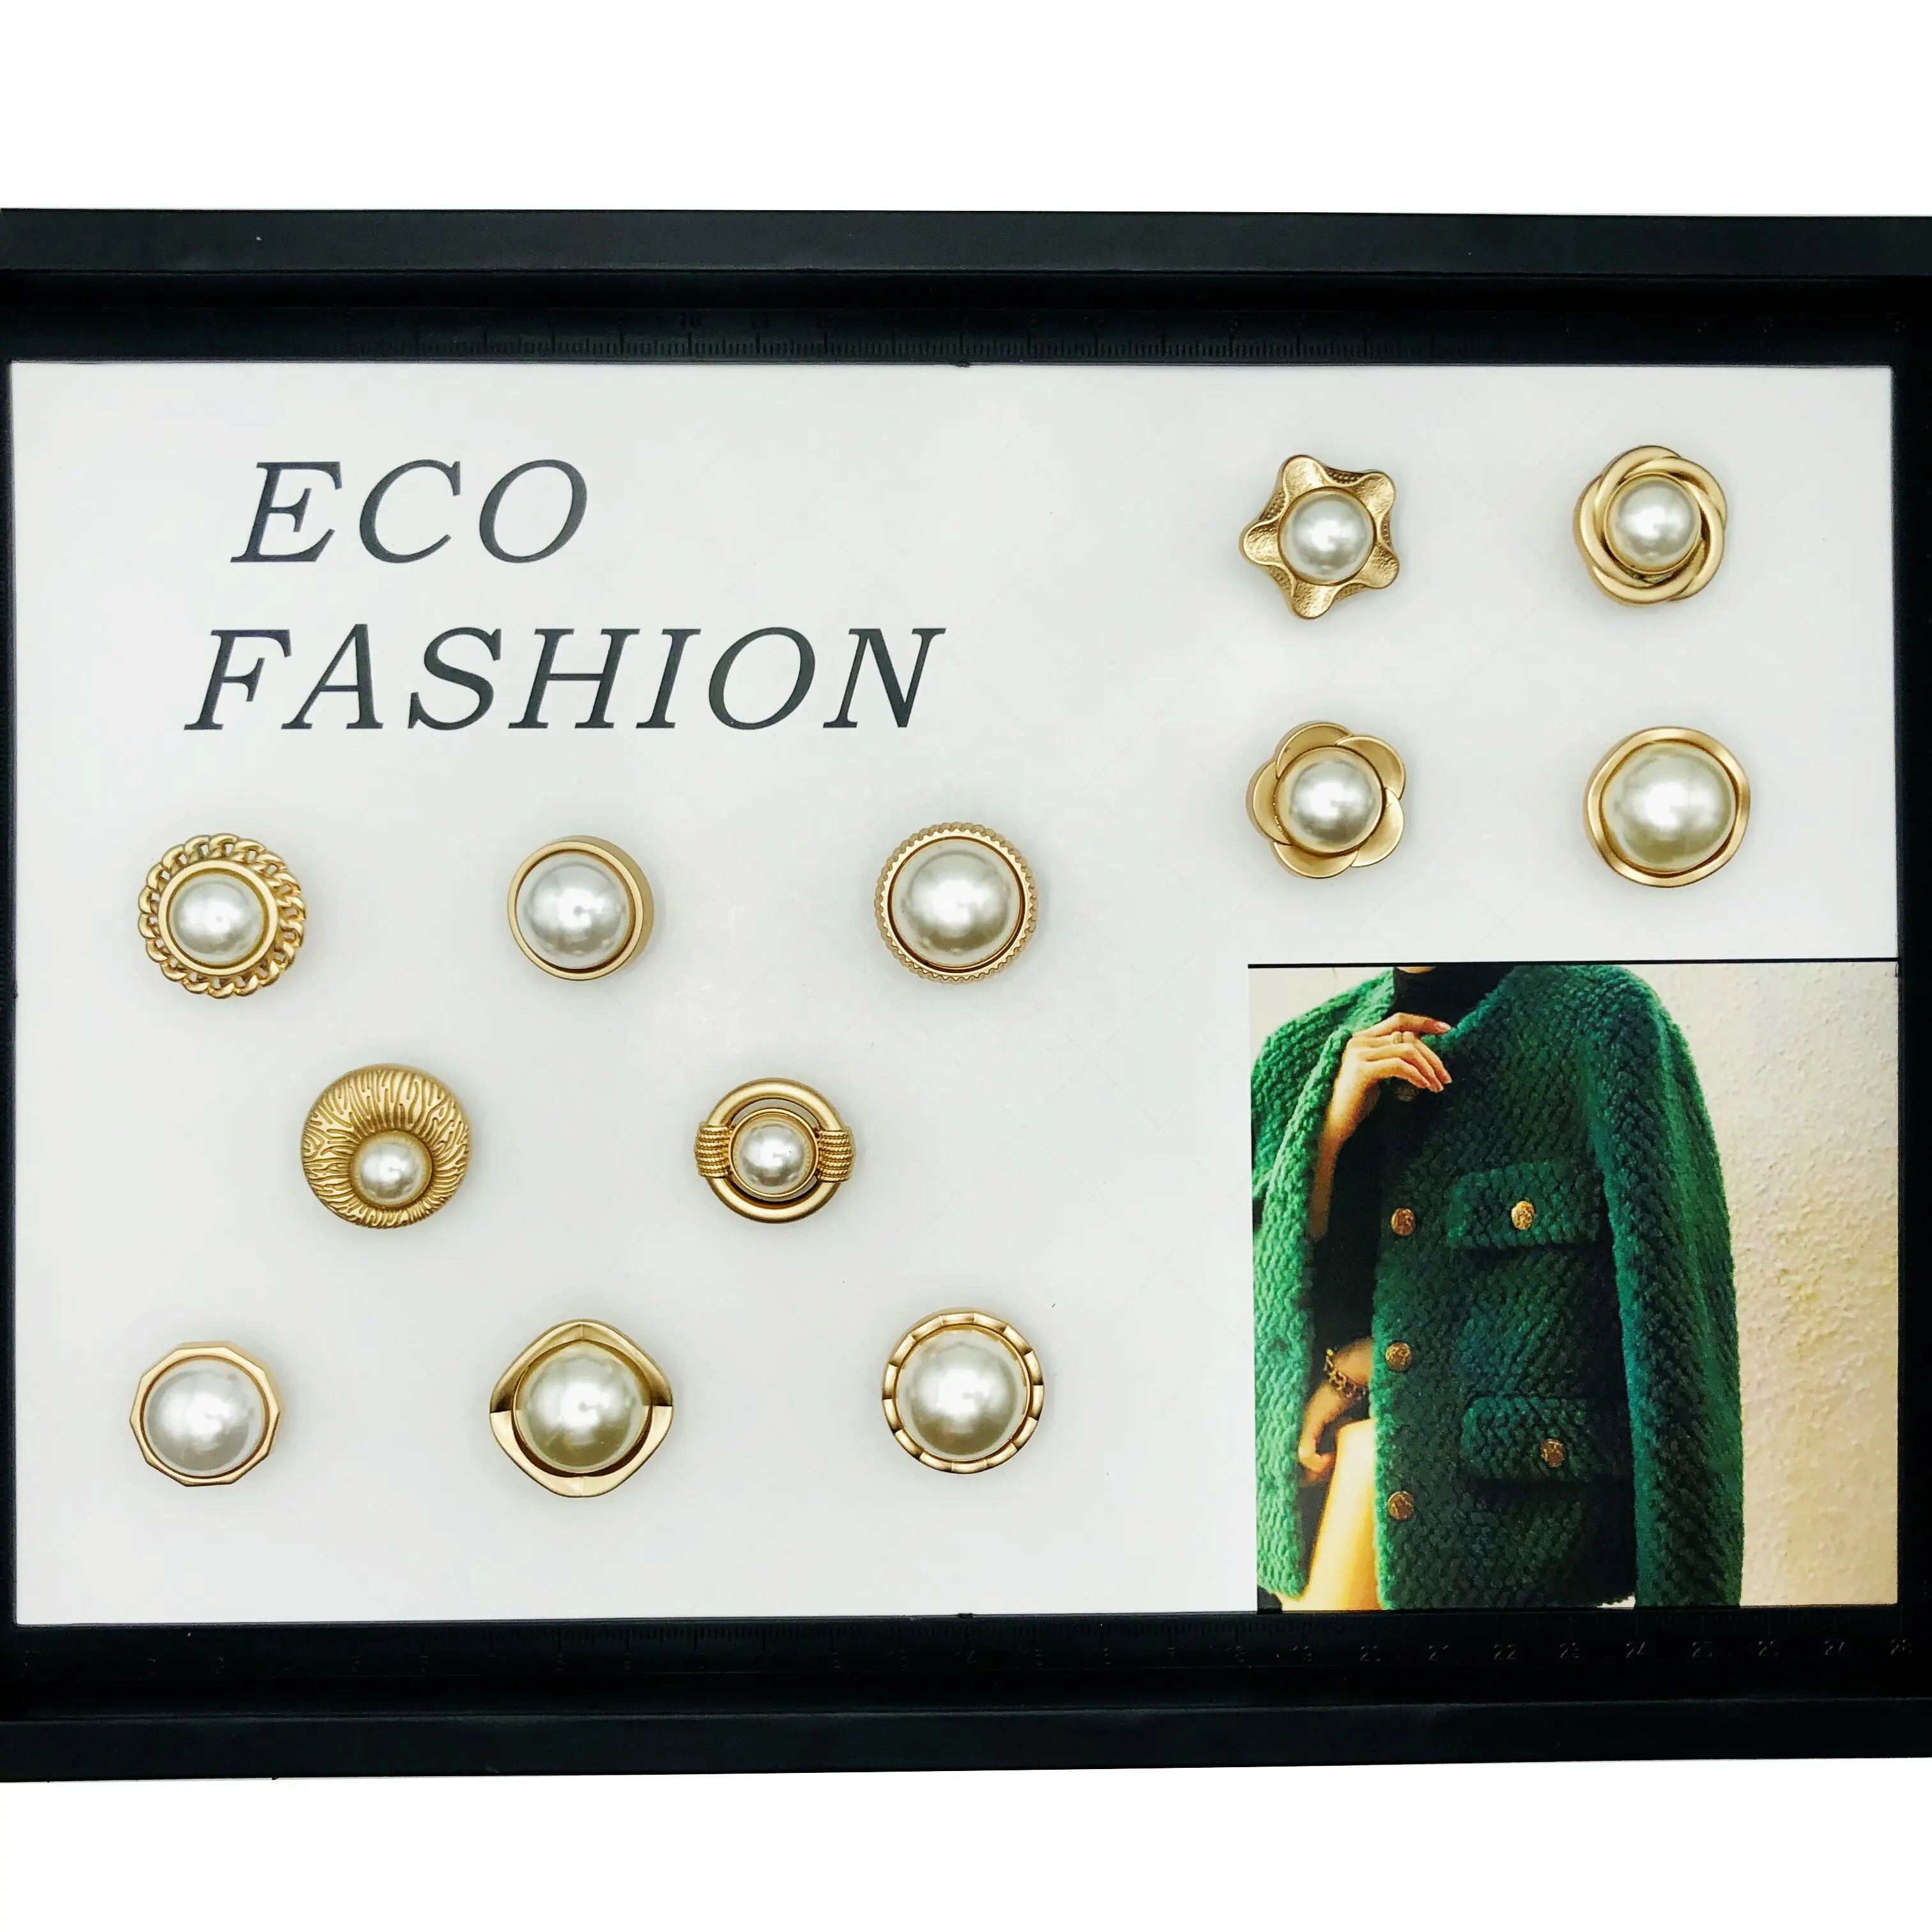 Moda tasarım özel Metal dikiş inci ceket fantezi düğmeler Metal alaşım altın incik inci giysiler için düğmeleri